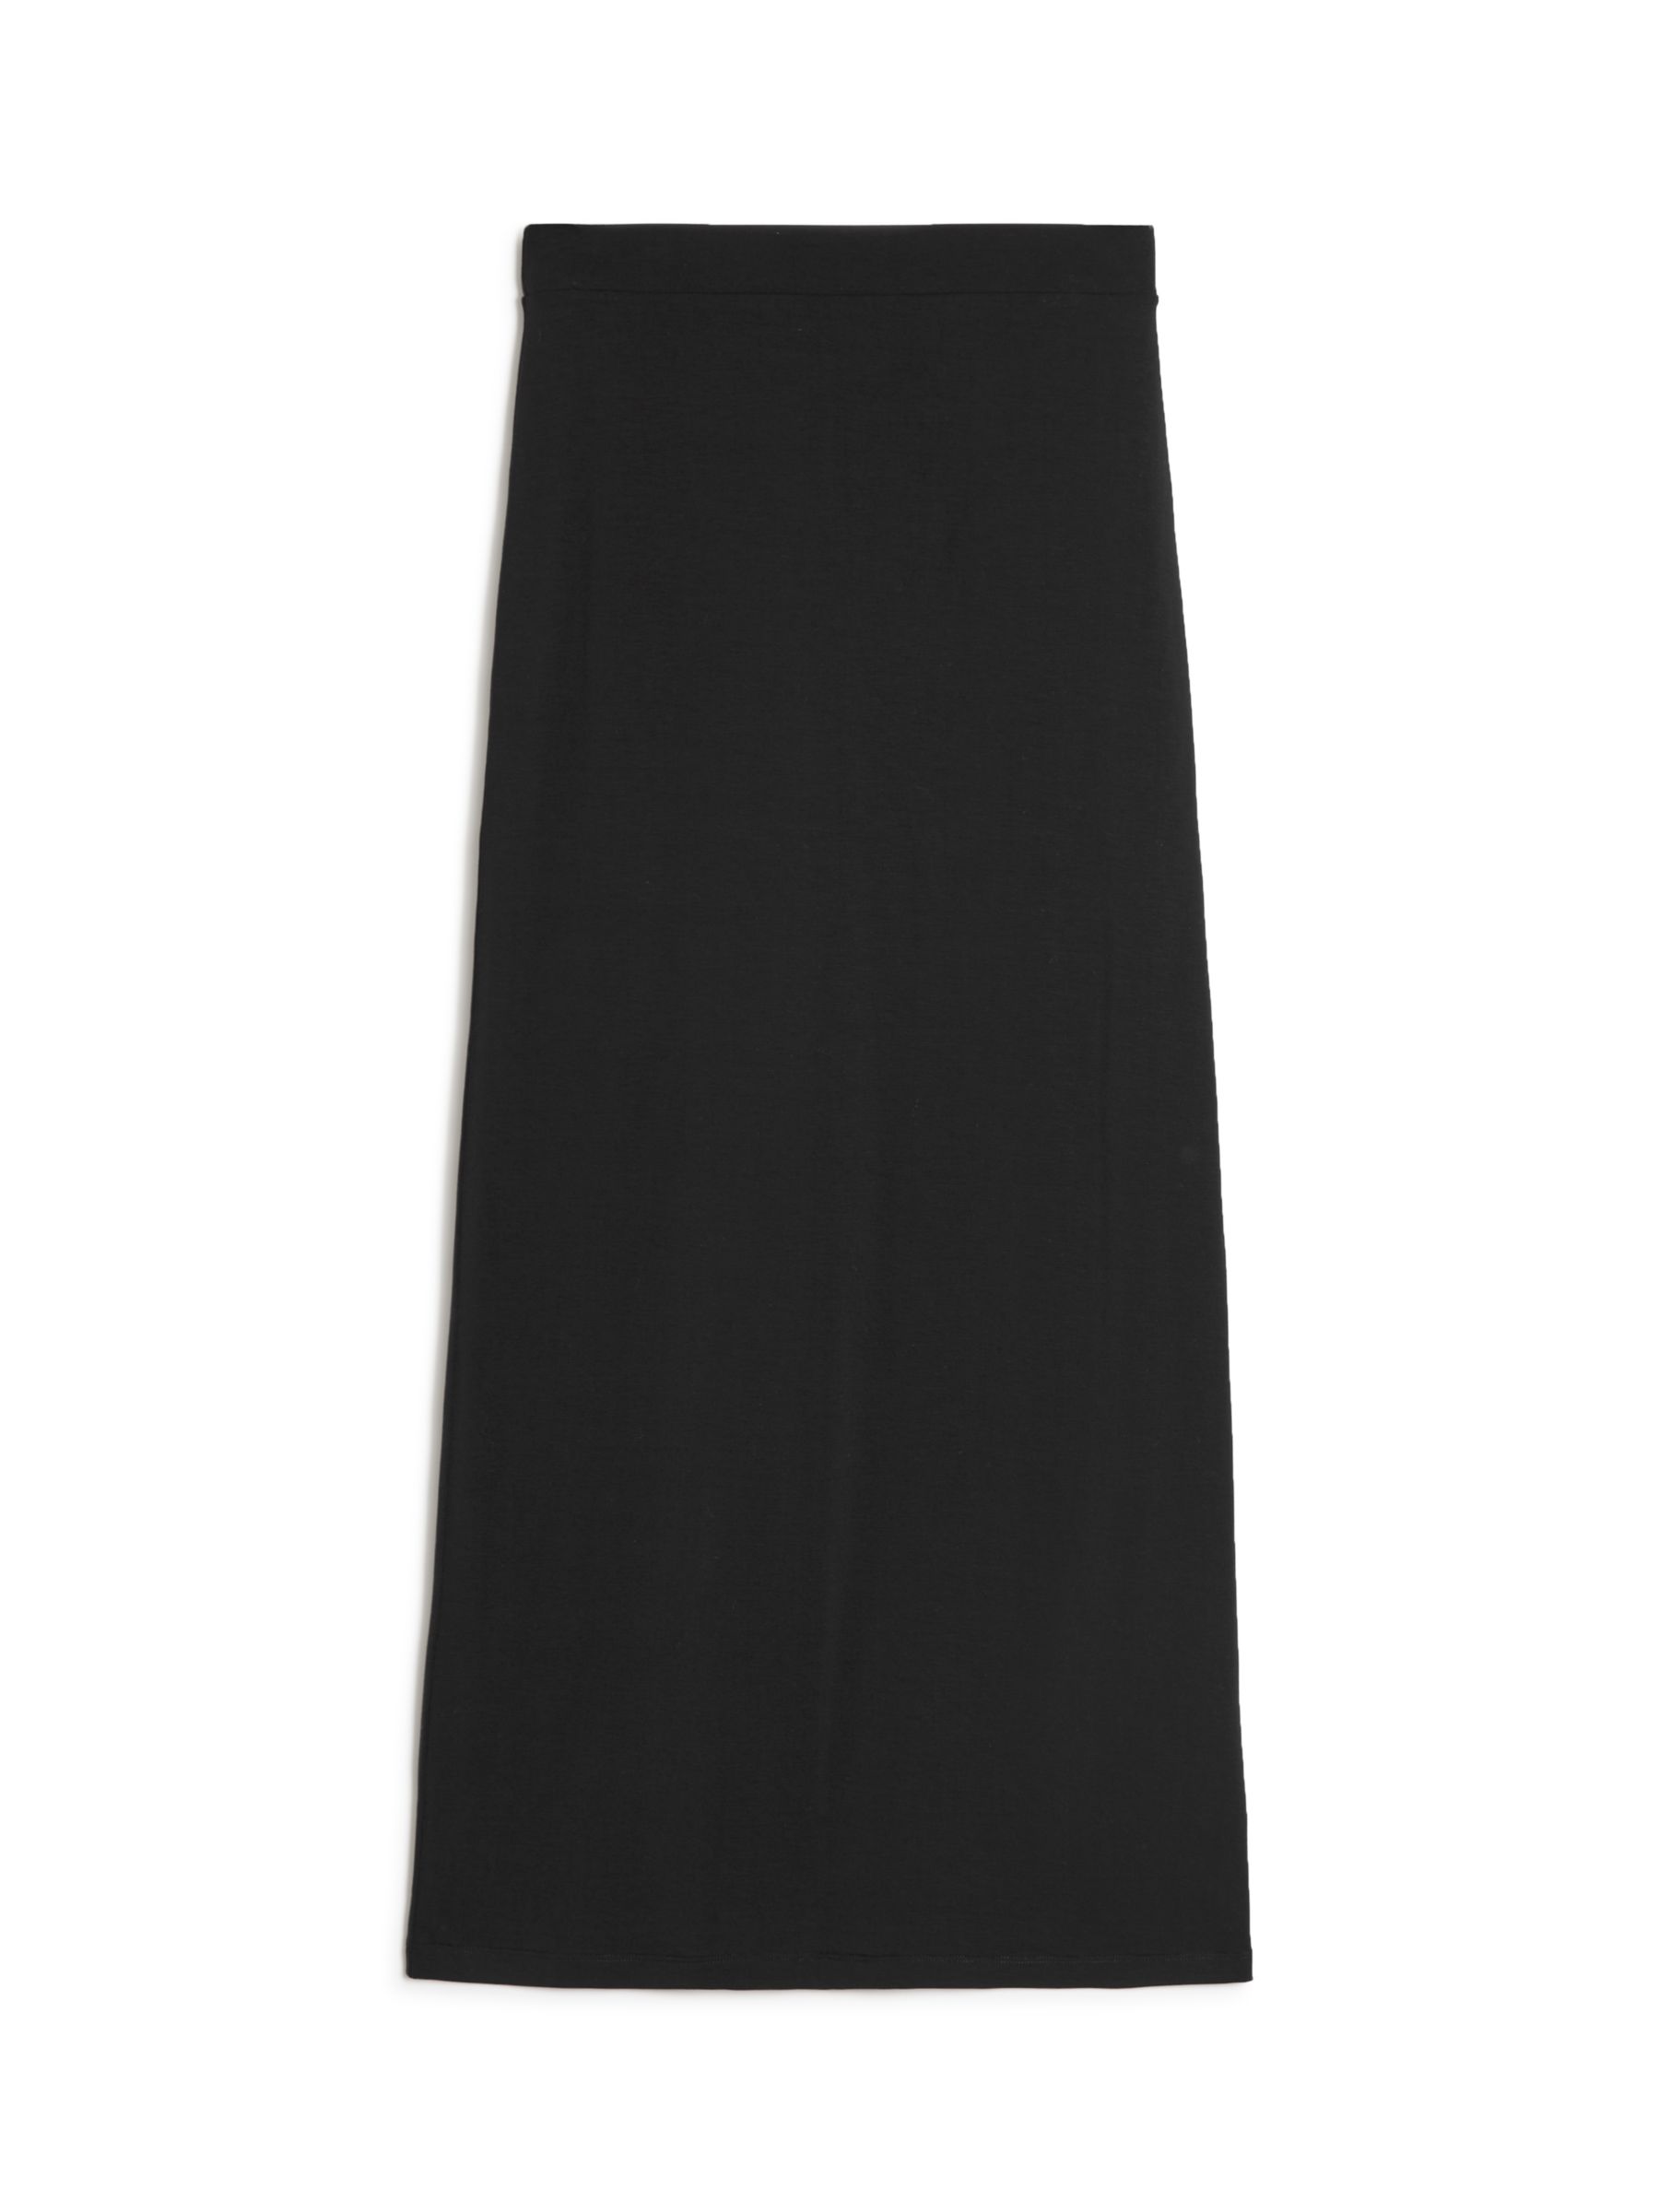 Buy Albaray Tube Skirt, Black Online at johnlewis.com